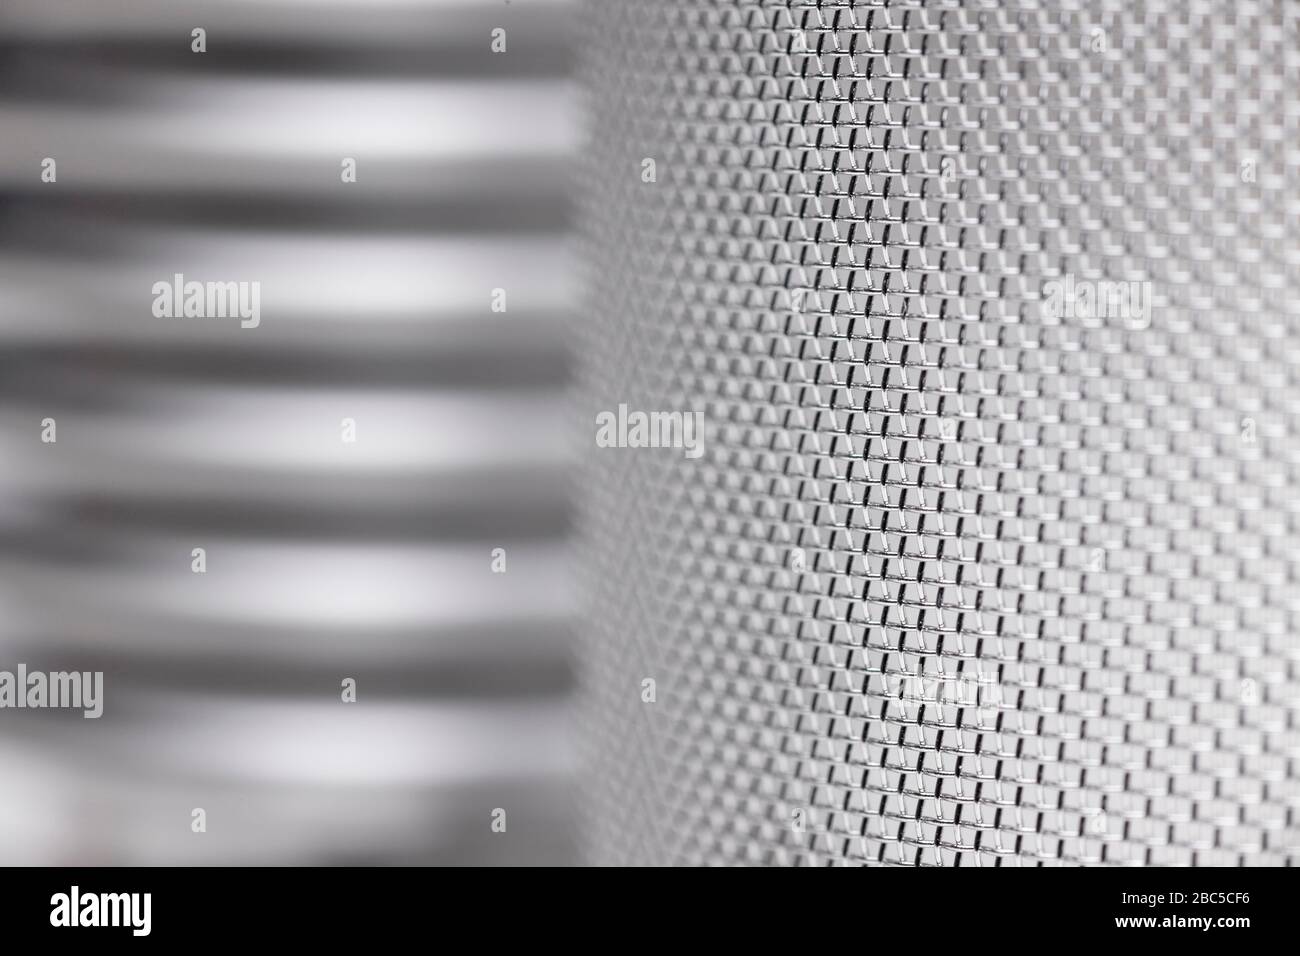 Detalle de una máquina de cribado en gris plateado - enfoque selectivo Foto de stock